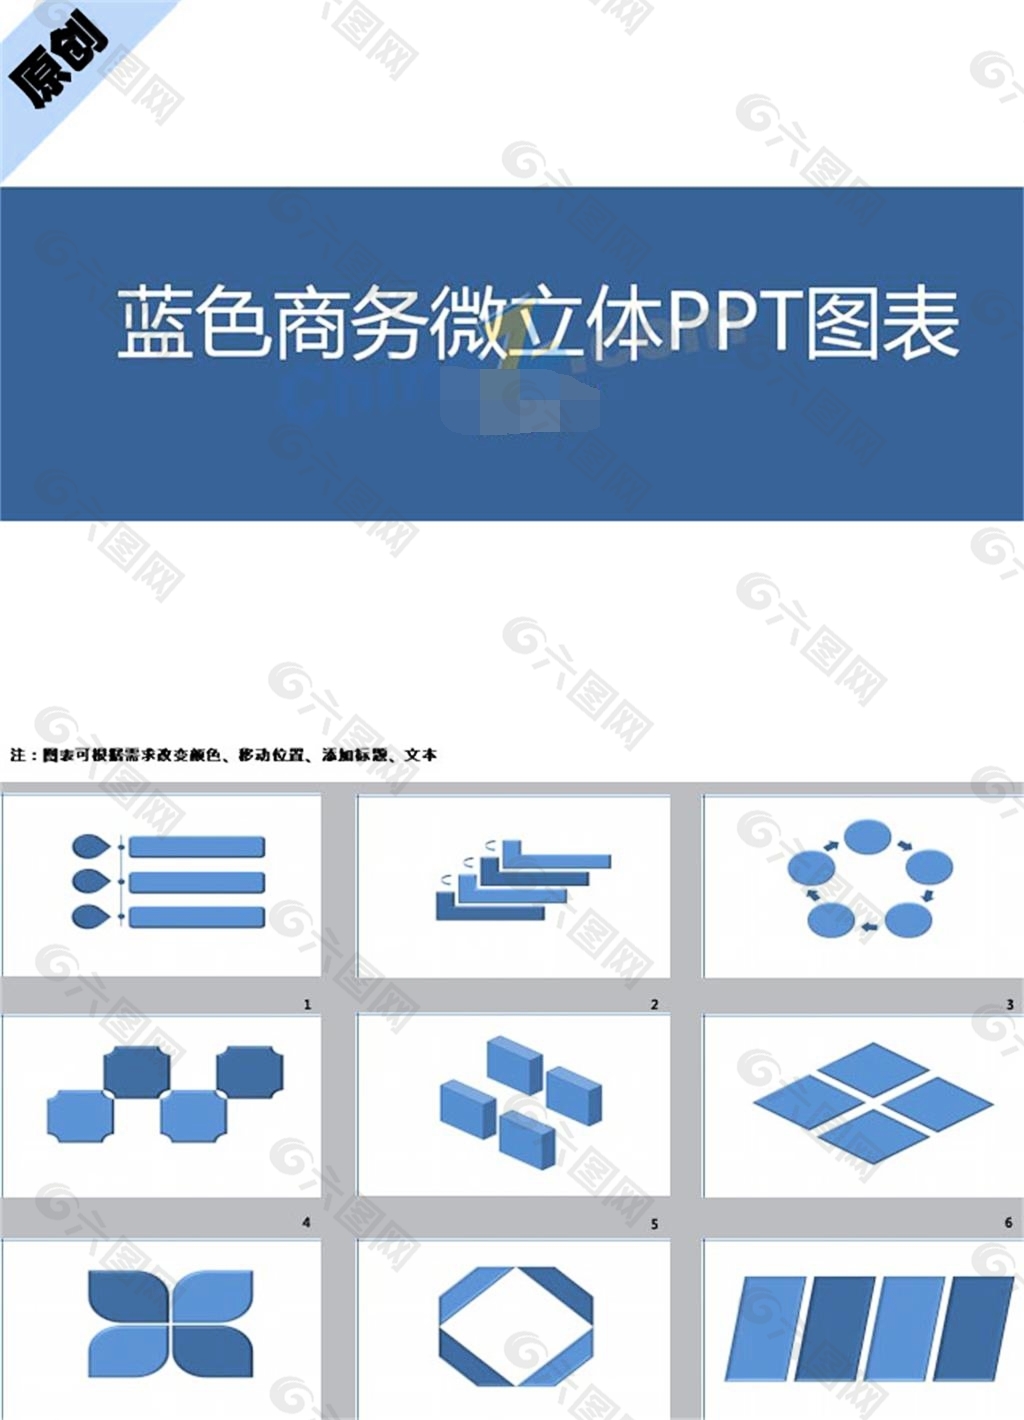 商务图标PPT模板